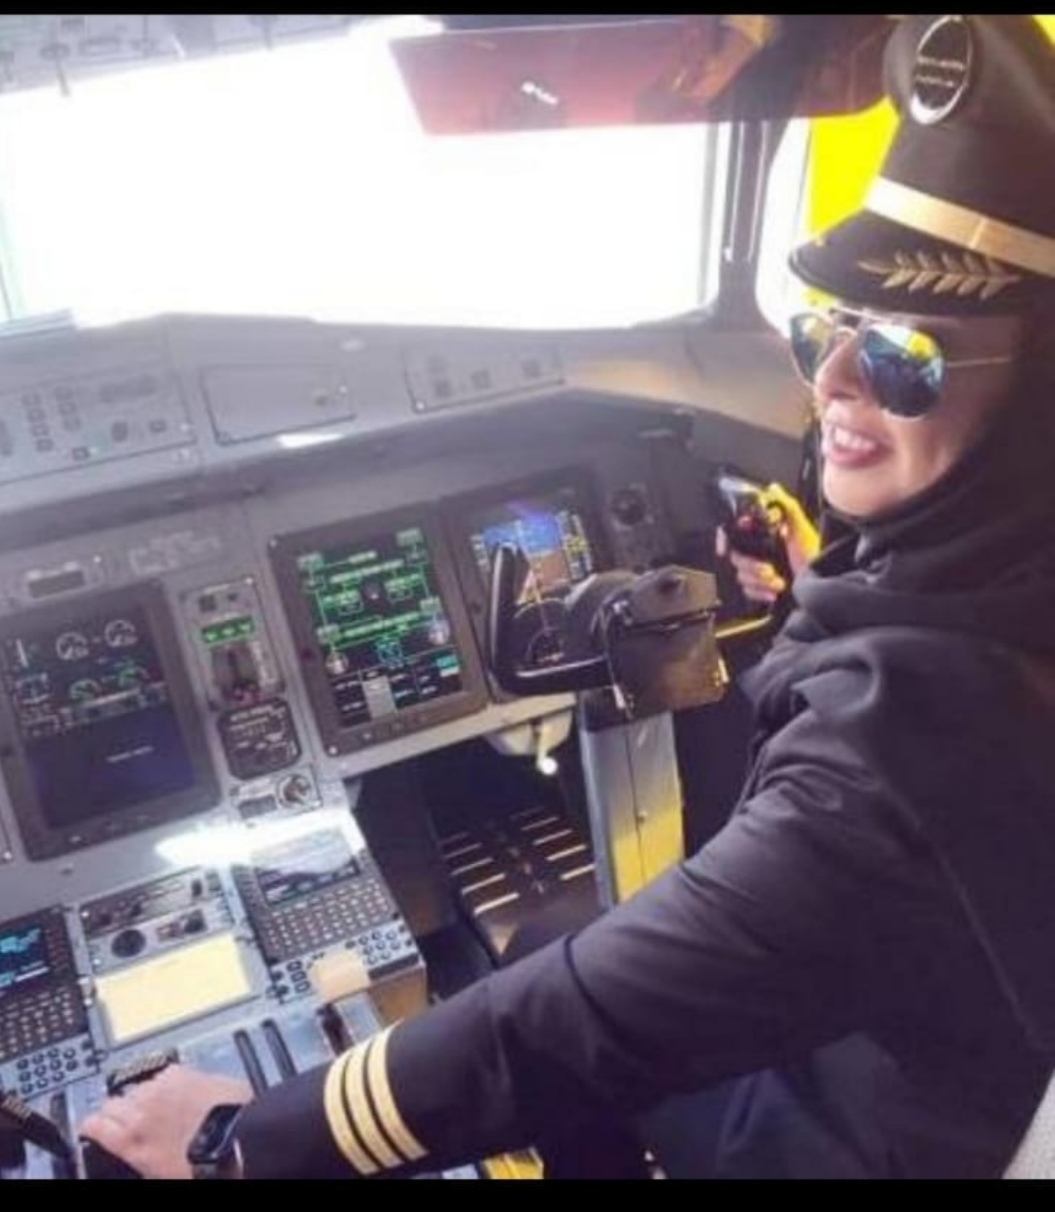 حققت الكابتن طيار ياسمين الميمني حلمها بقيادة أول رحلة طيران رسمية لها في المملكة كمساعد طيار، 